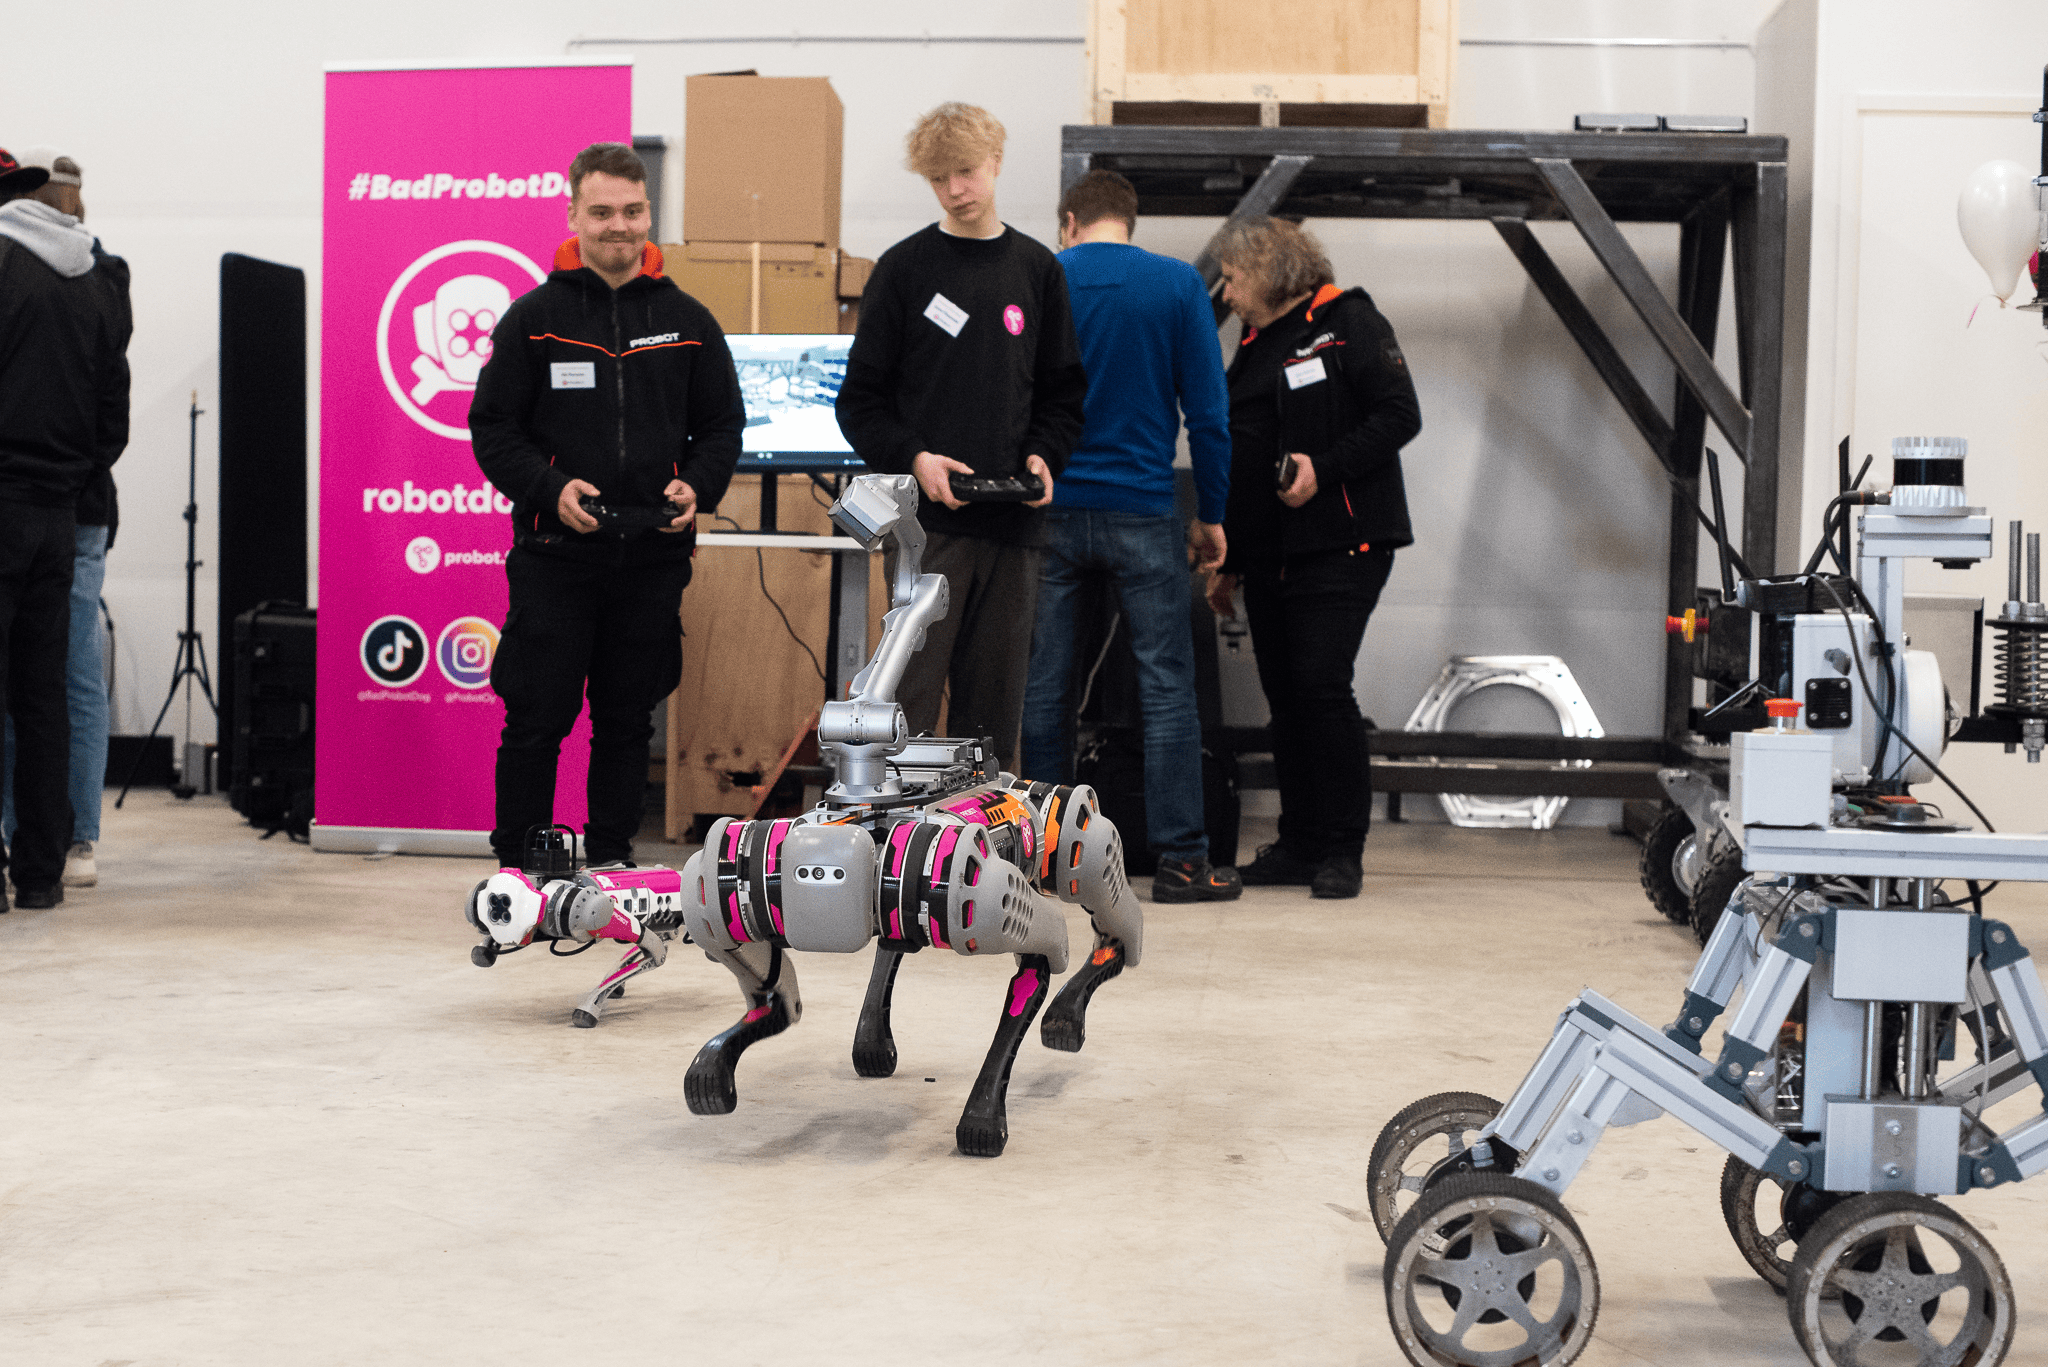 Iso ja pieni robottikoira juoksevat kohti kameraa. Taustalla kaksi miestä, joilla kädessä robottiikoirien ohjaimet sekä pinkki roll up, jossa lukee #badprobotdog.